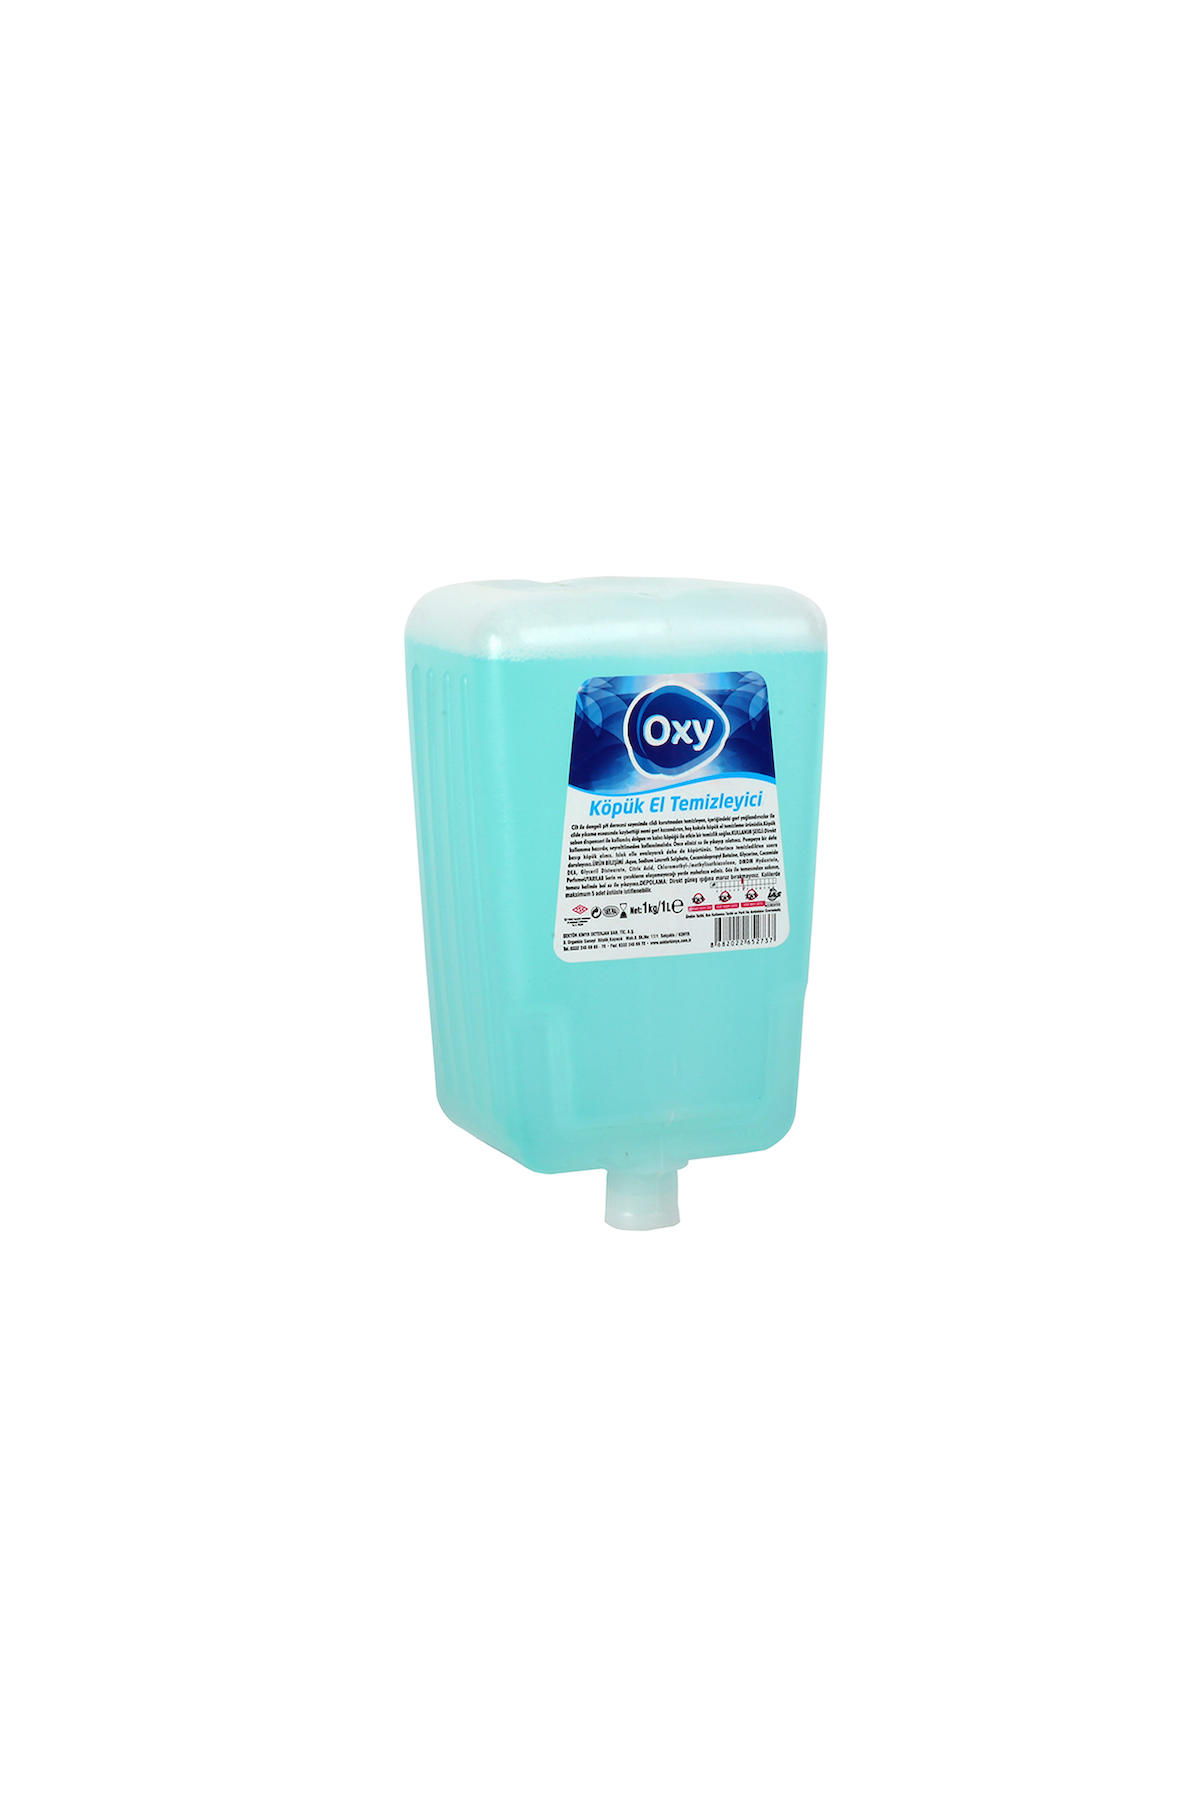 Oxy Köpük Sıvı Sabun 1 lt Tekli